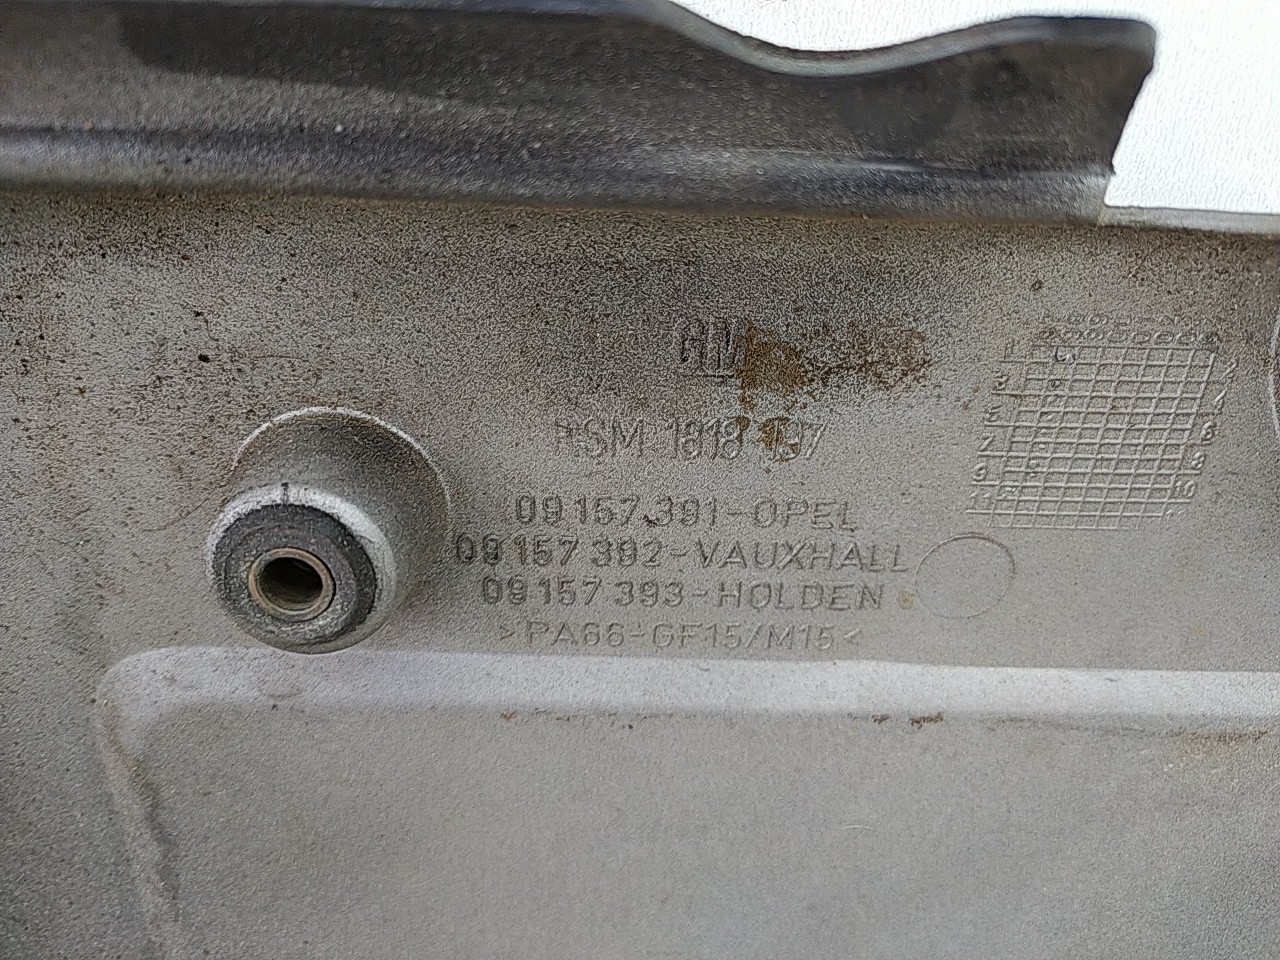 Cobertura motor (20245334).